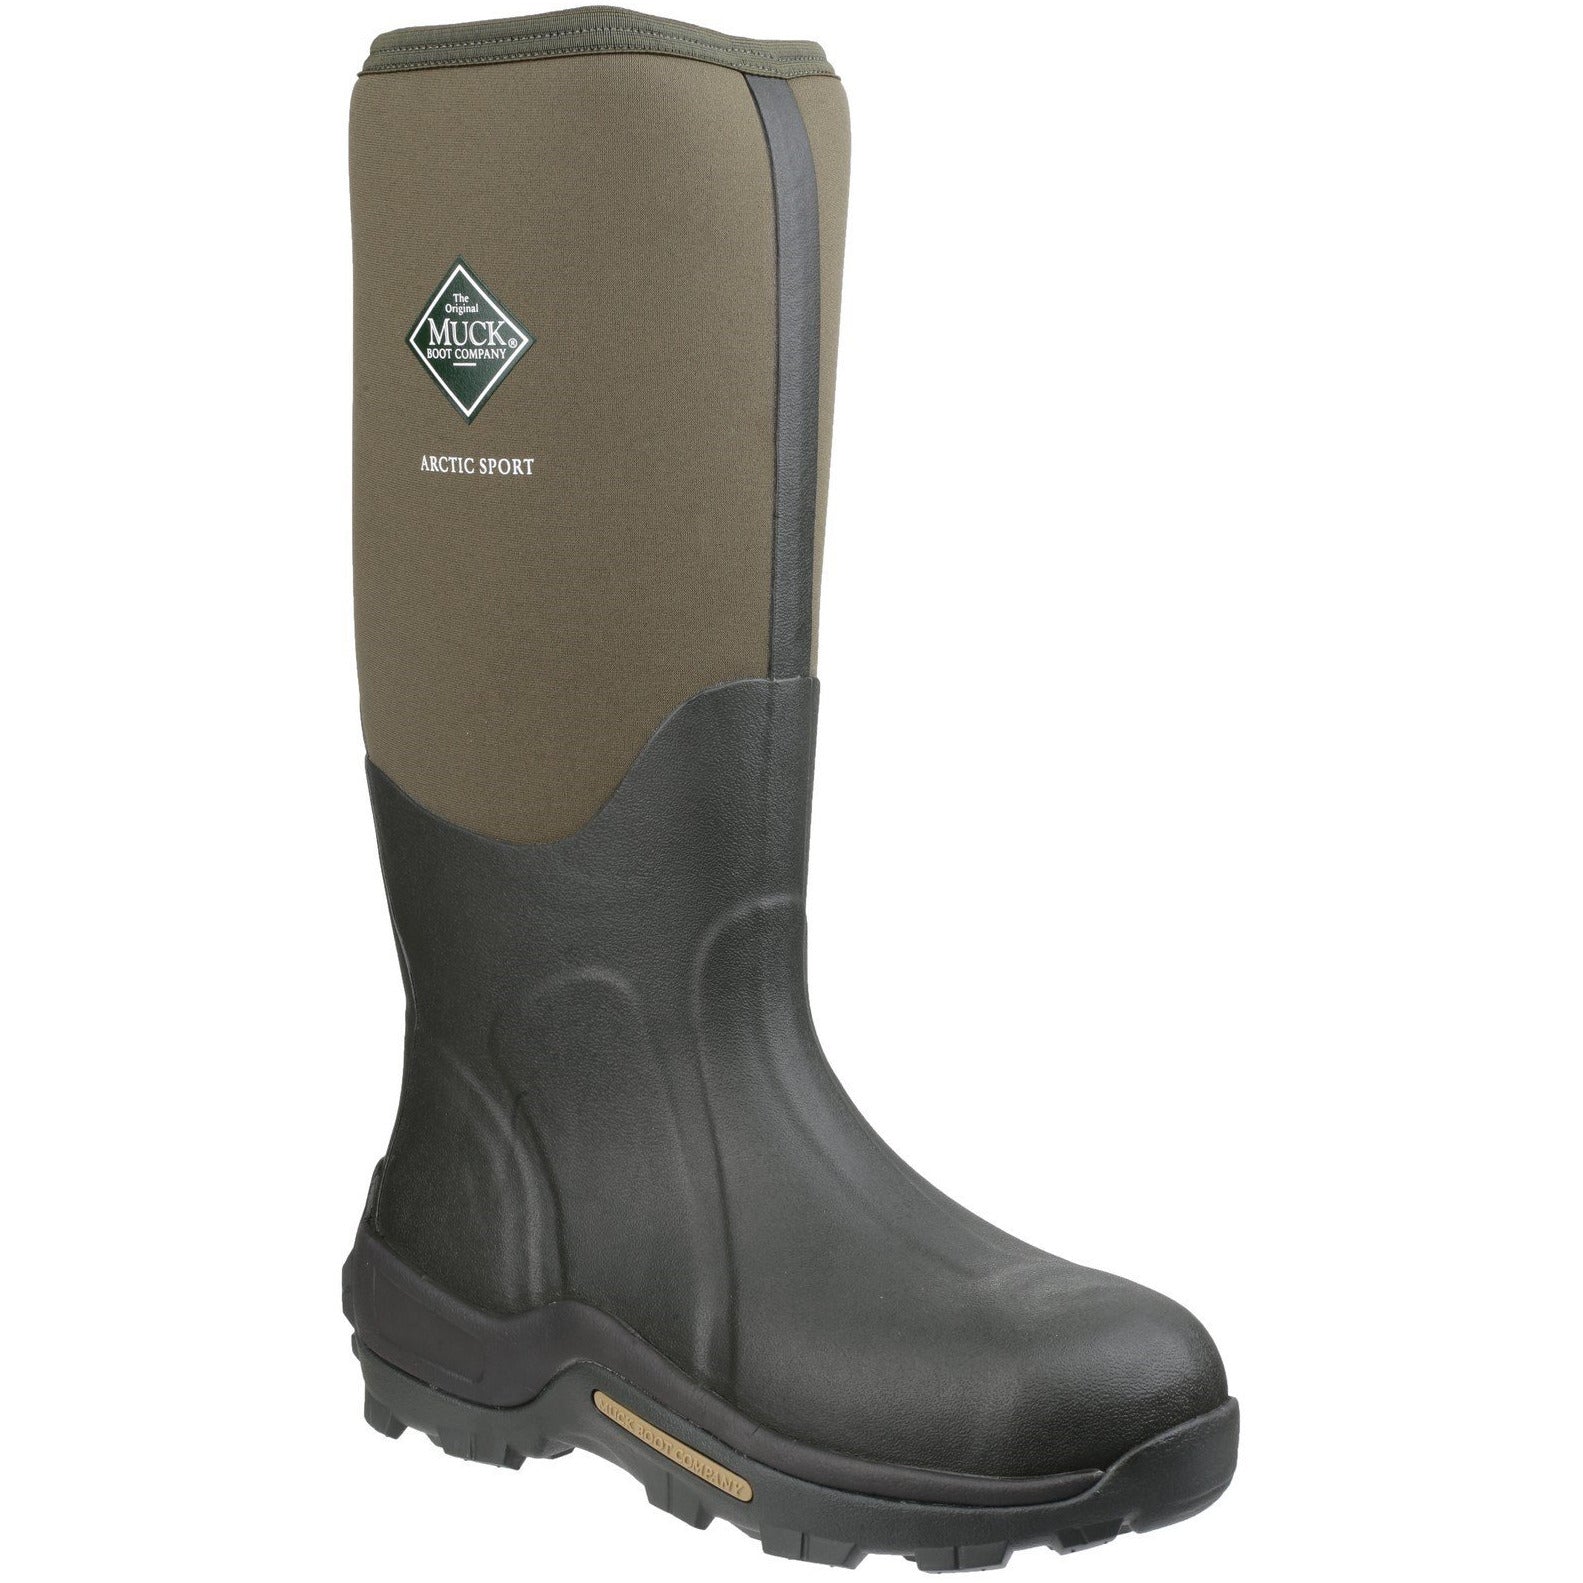 Muck Boots Arctic Sport Tall - Moss – Work & Safety